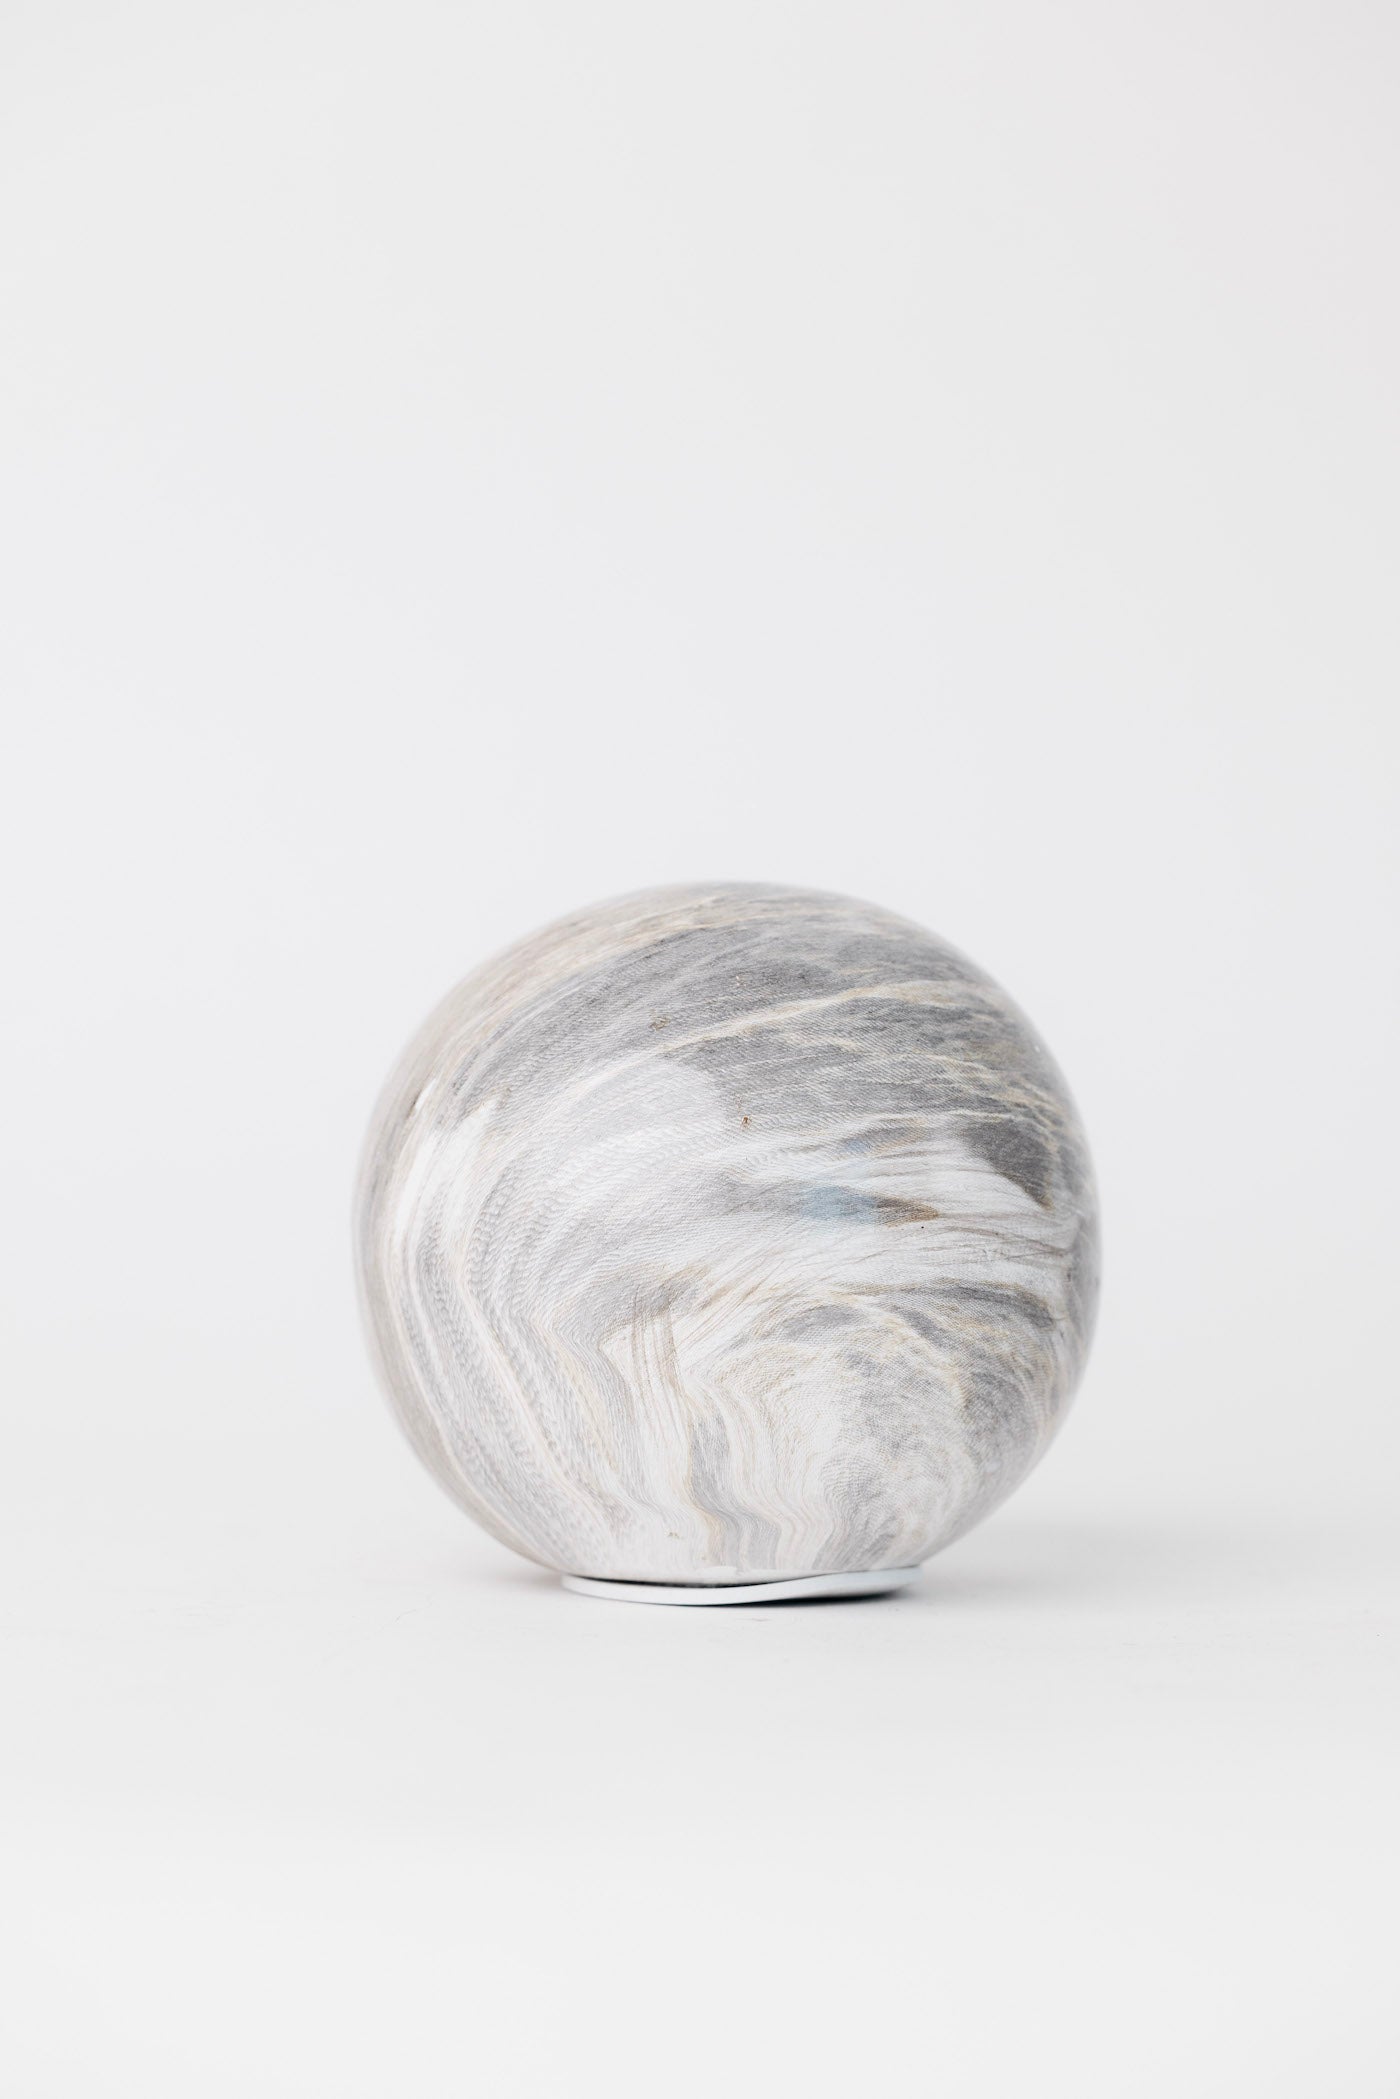 Jorde Marble Sphere